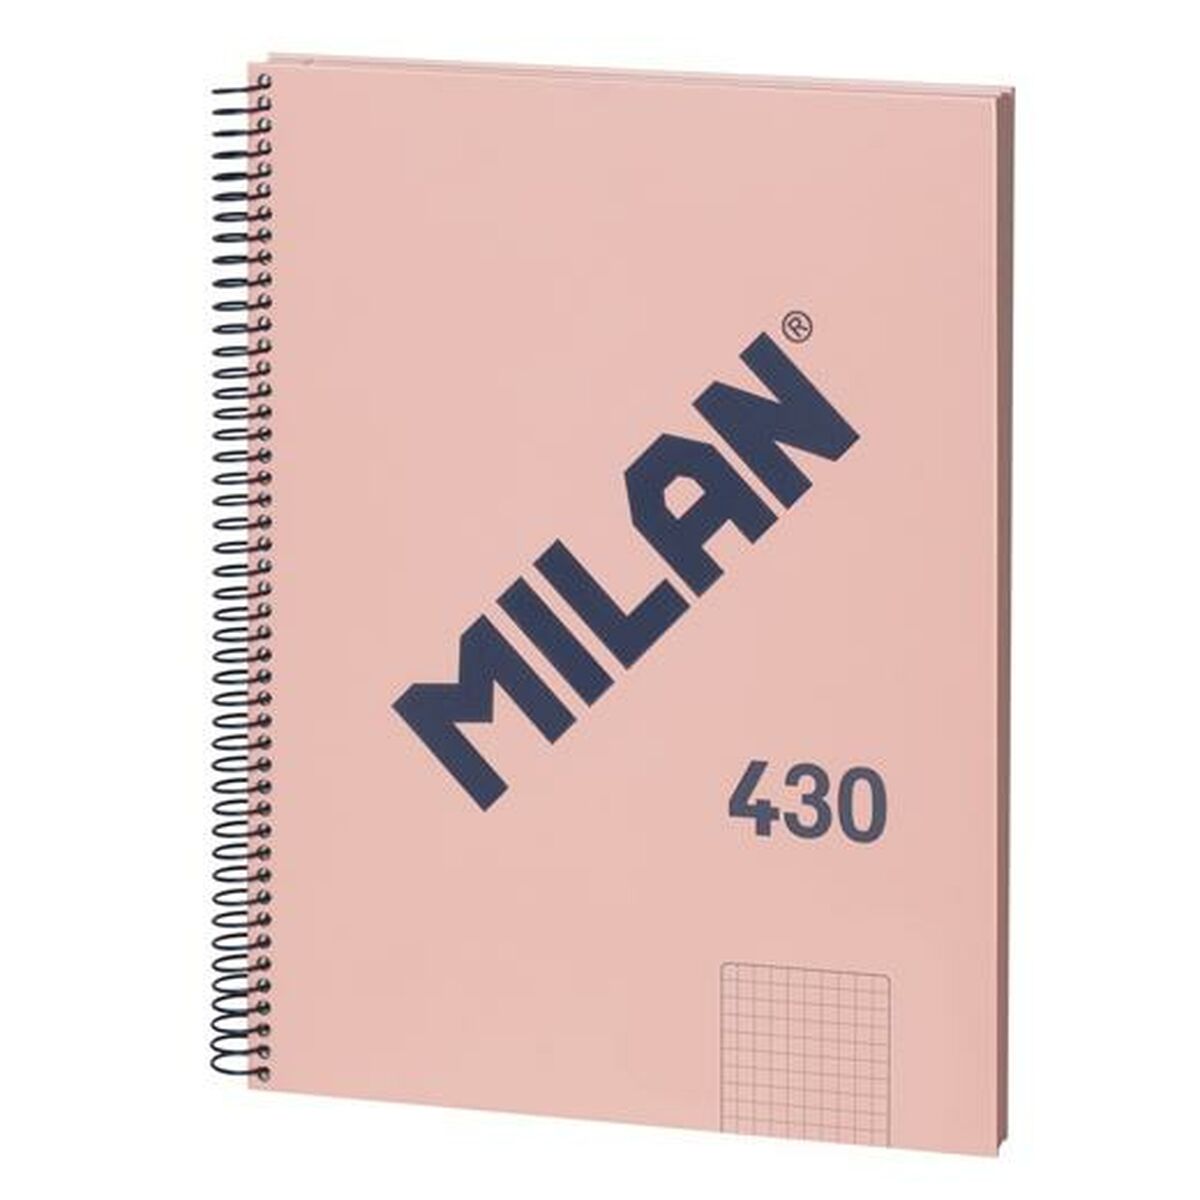 Muistikirja Milan 430 Pinkki A4 80 Levyt (3 osaa)